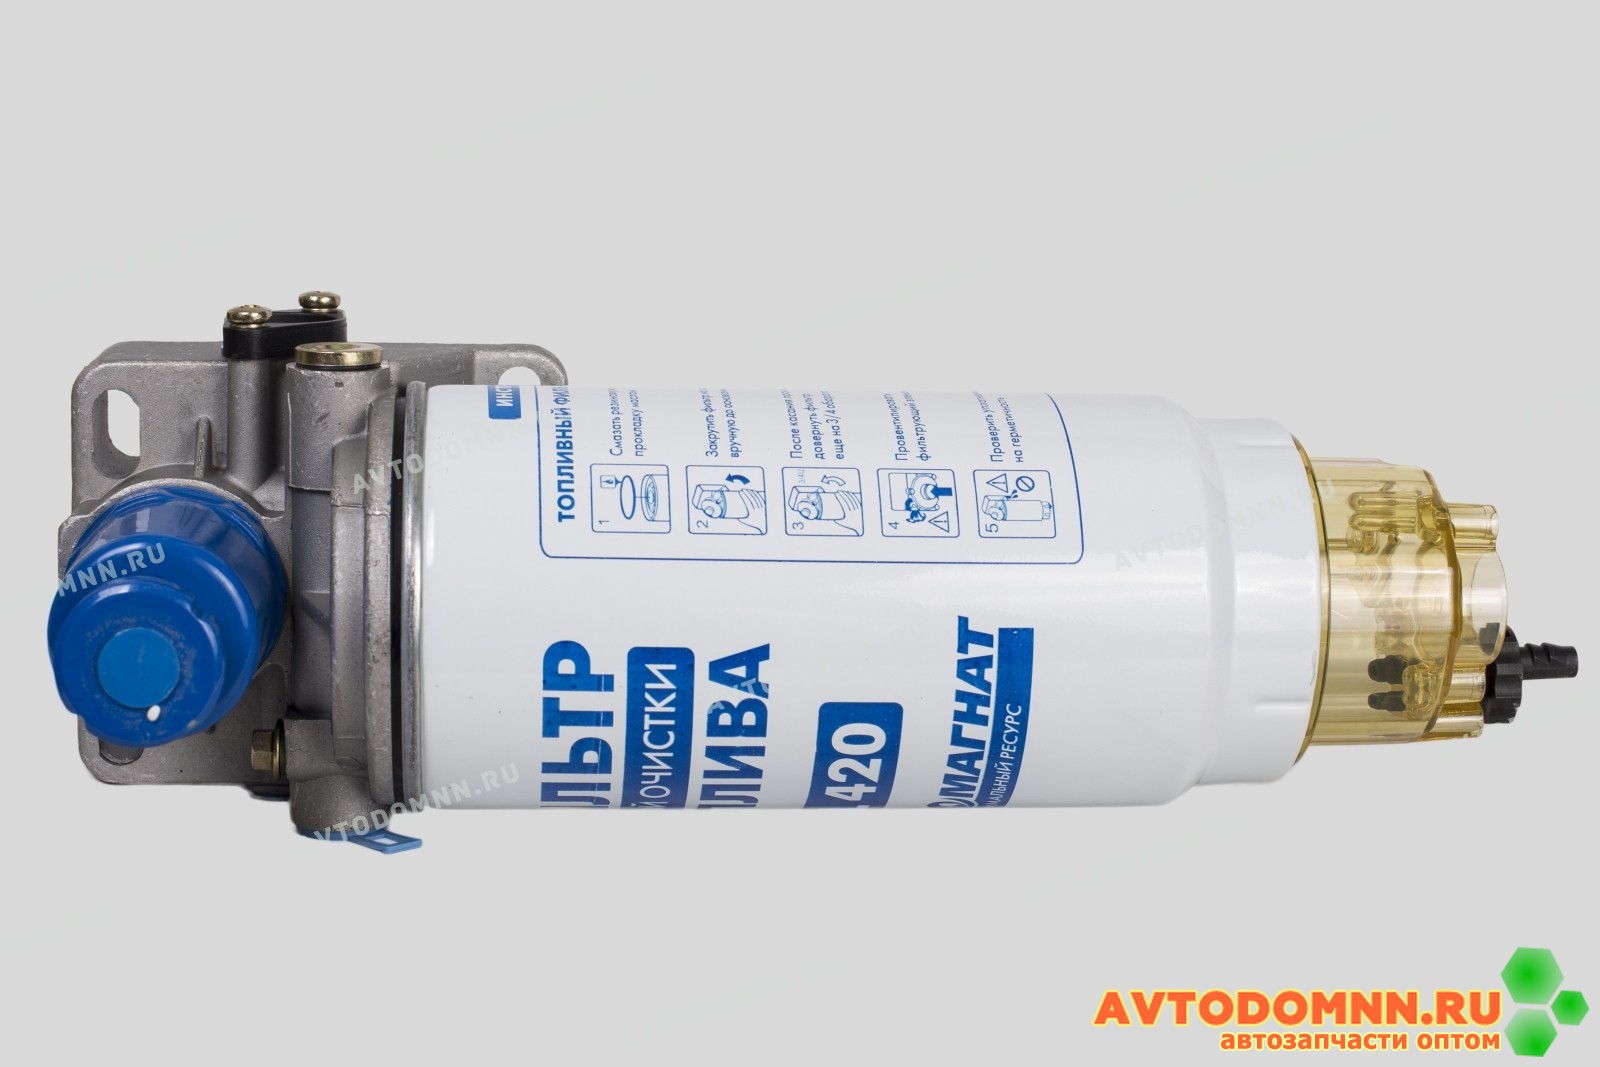 PL 420 ФГОТ Фильтр грубой очистки топлива в сборе ЕВРО-2 (Прилайн) большой н/о (высокого давления)